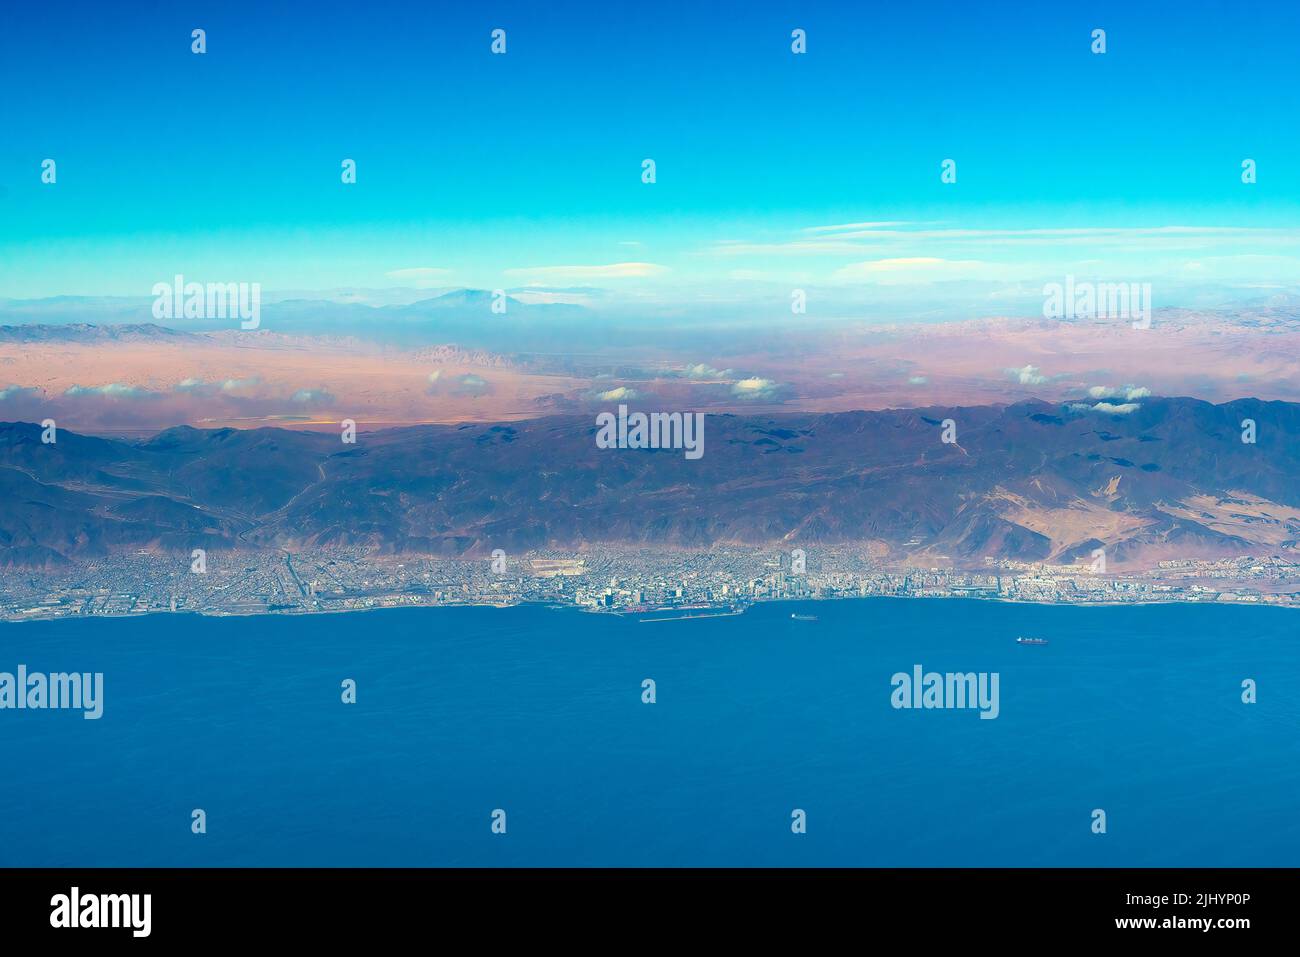 Vista aérea de la costa de Antofagasta, conocida como la Perla del Norte y la ciudad más grande de la Región Minera del norte de Chile. Foto de stock